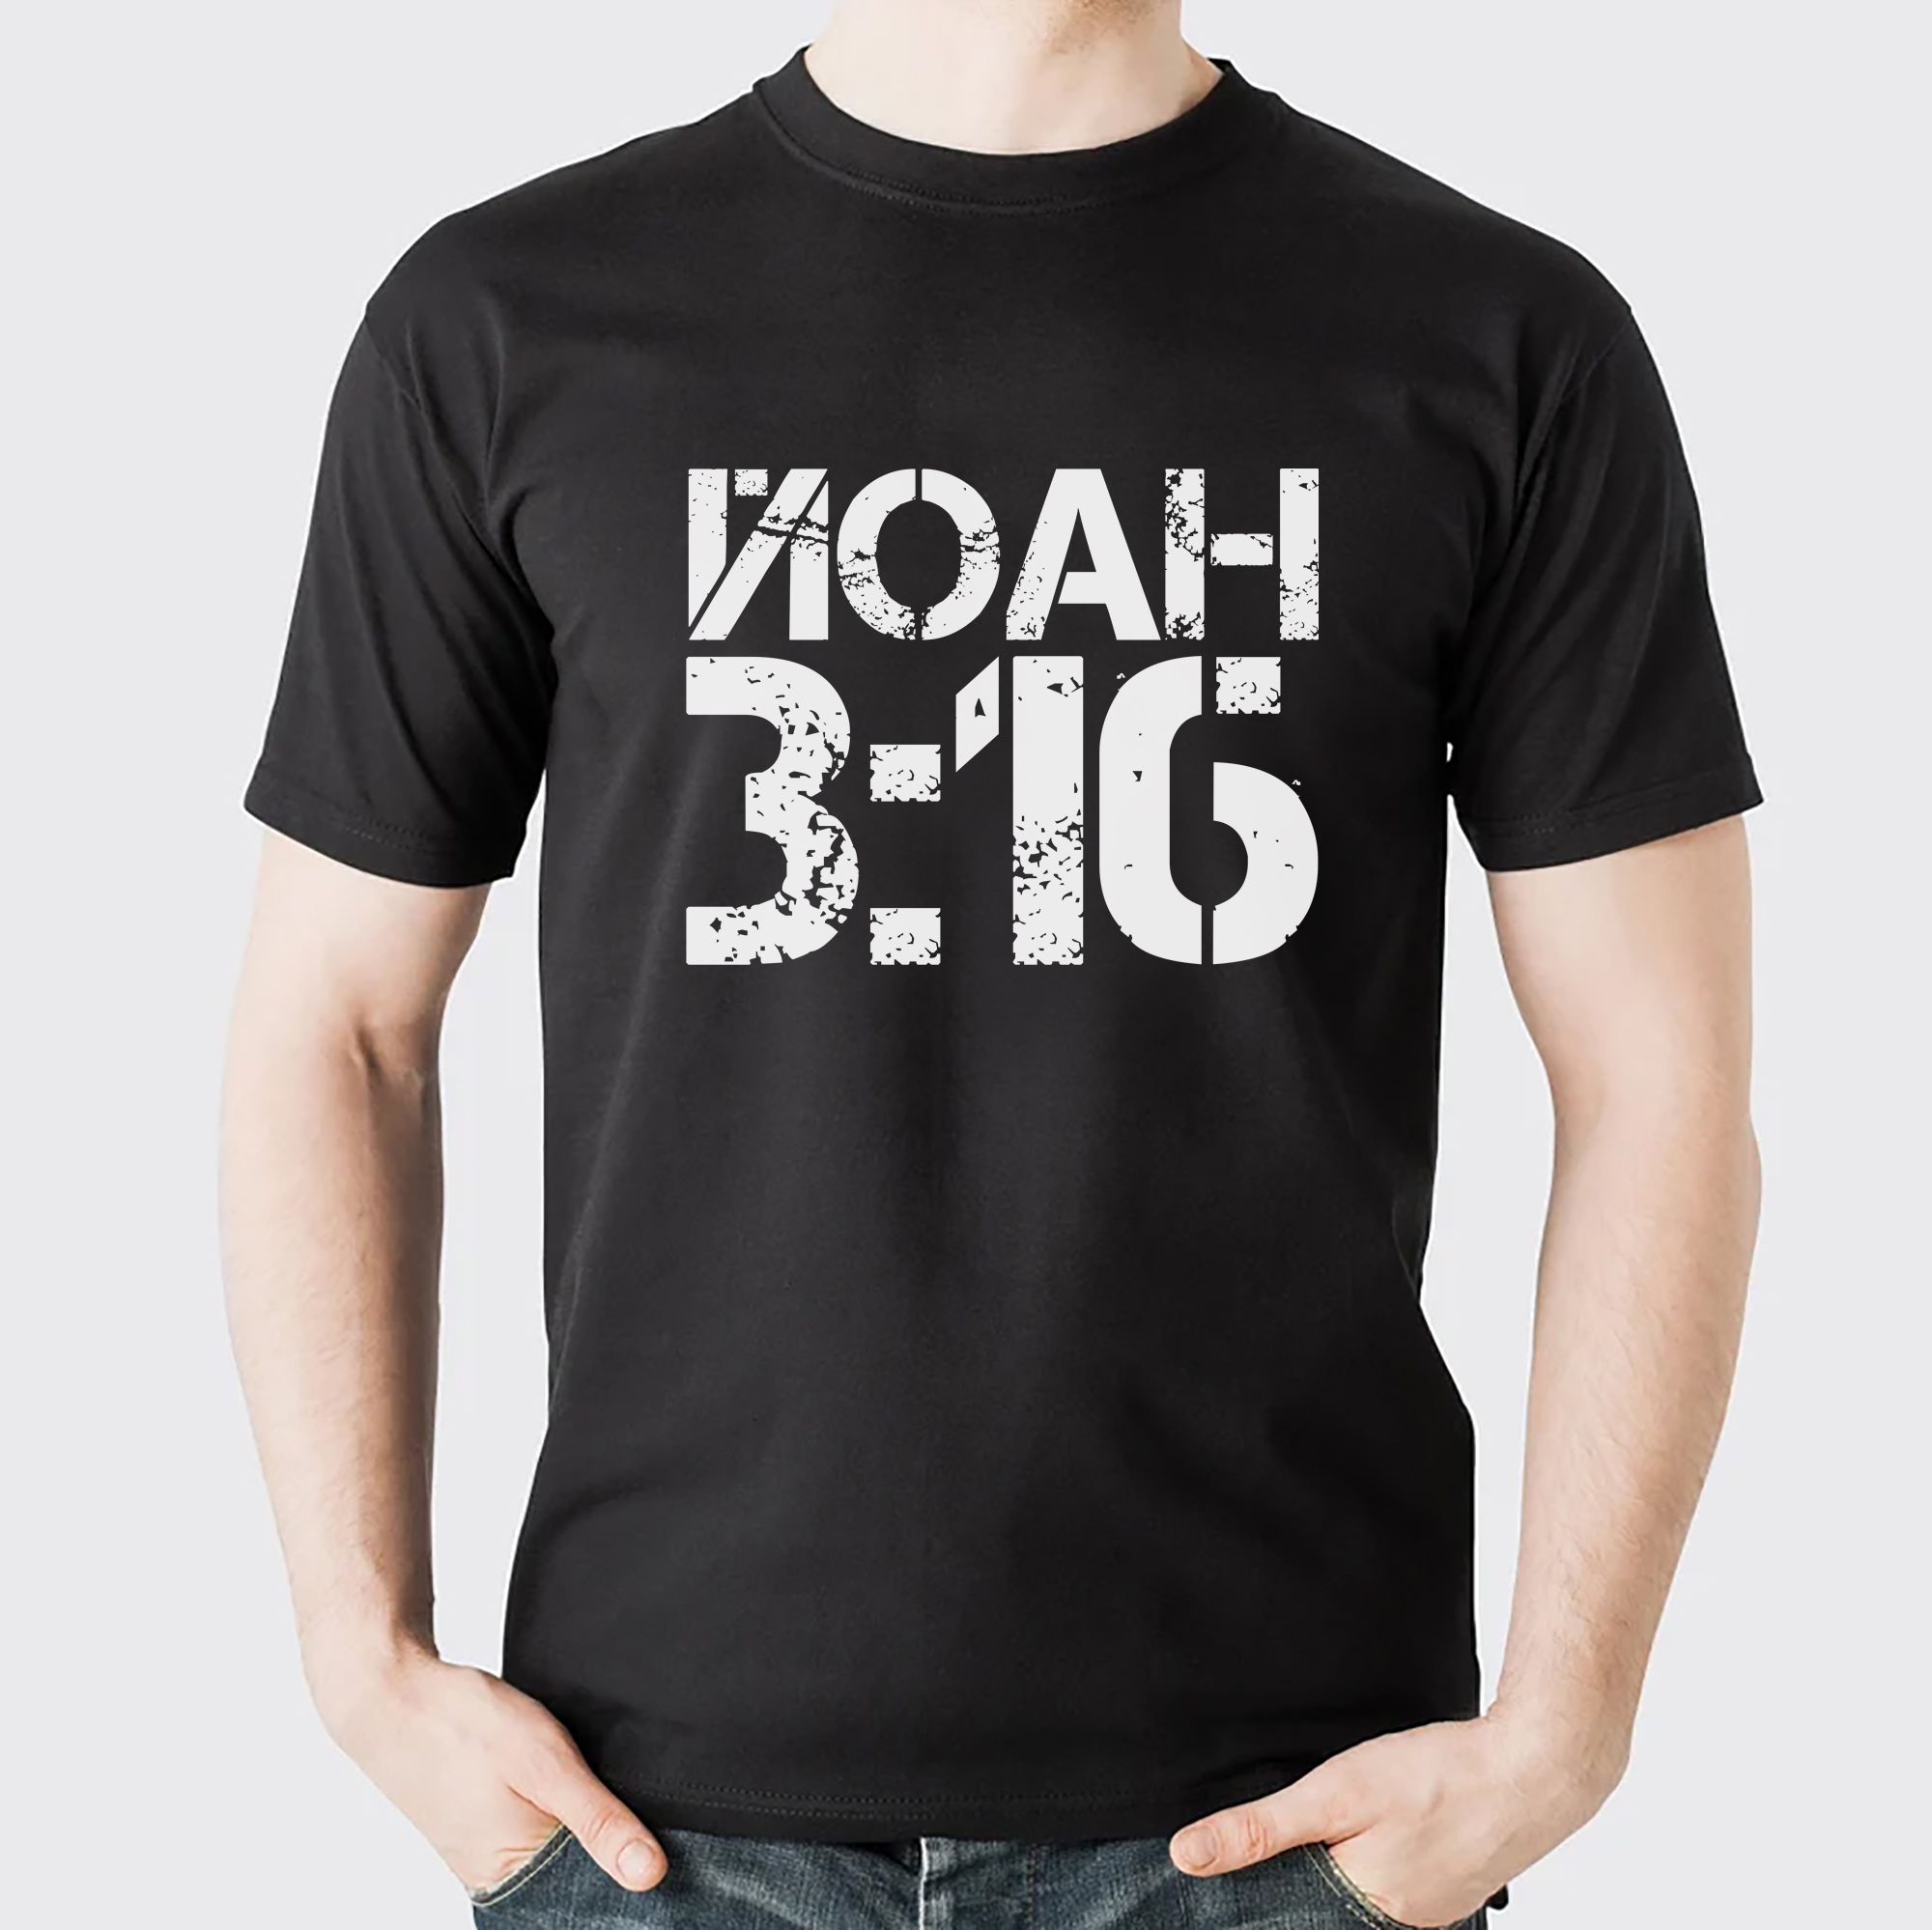 Тениска - ЙОАН 3:16 (размер XXL)